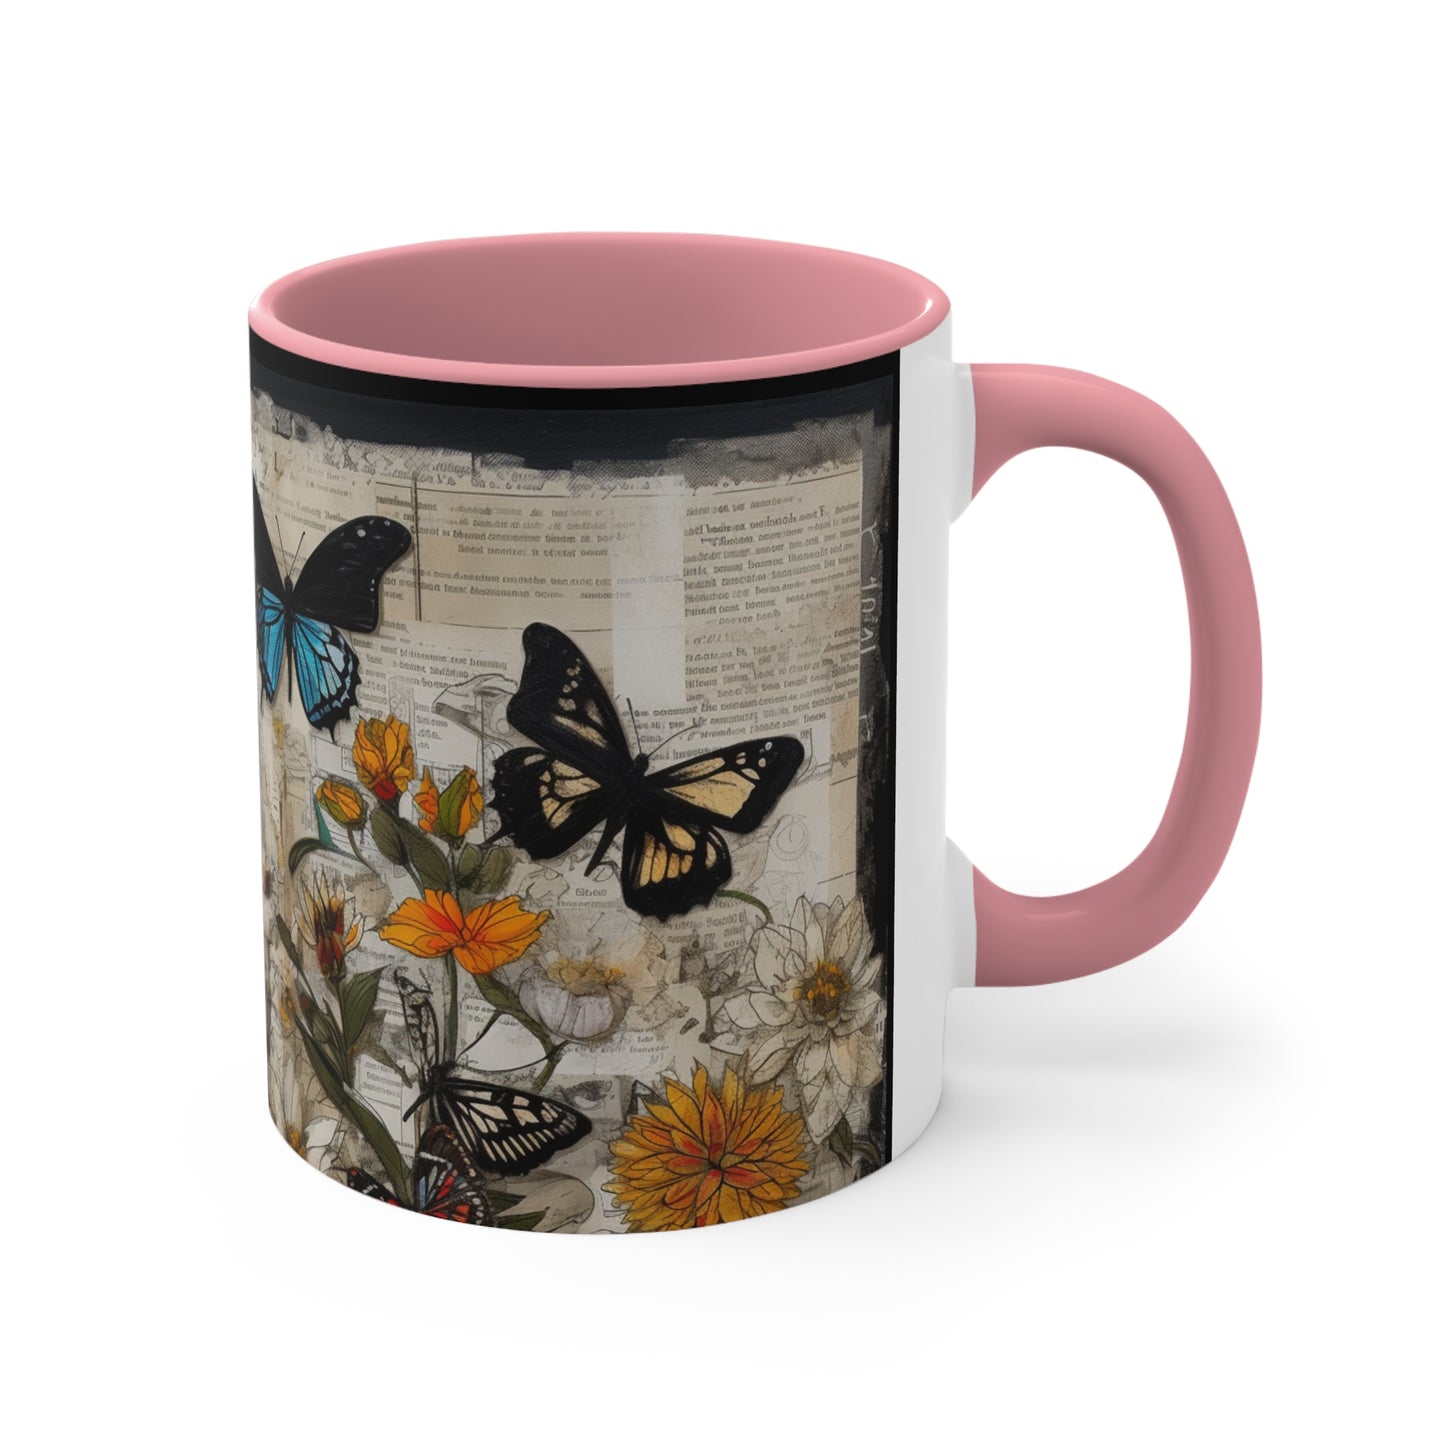 Accent Coffee Mug, 11oz - Butterflies over a Garden of Flowers